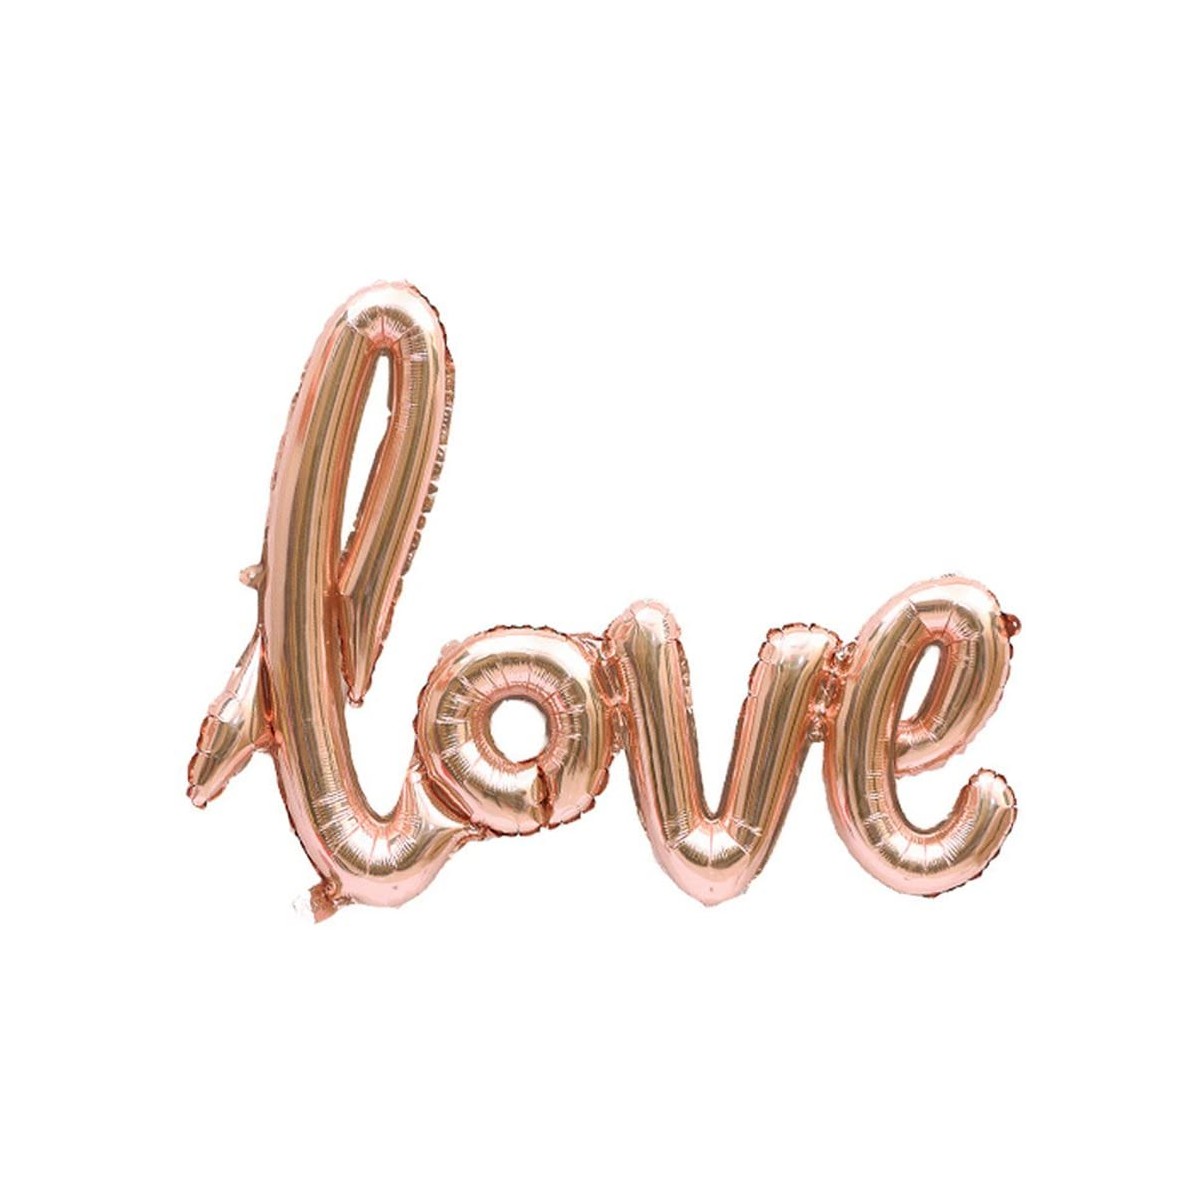 Palloncino scritta Love oro rosa, in alluminio, per feste